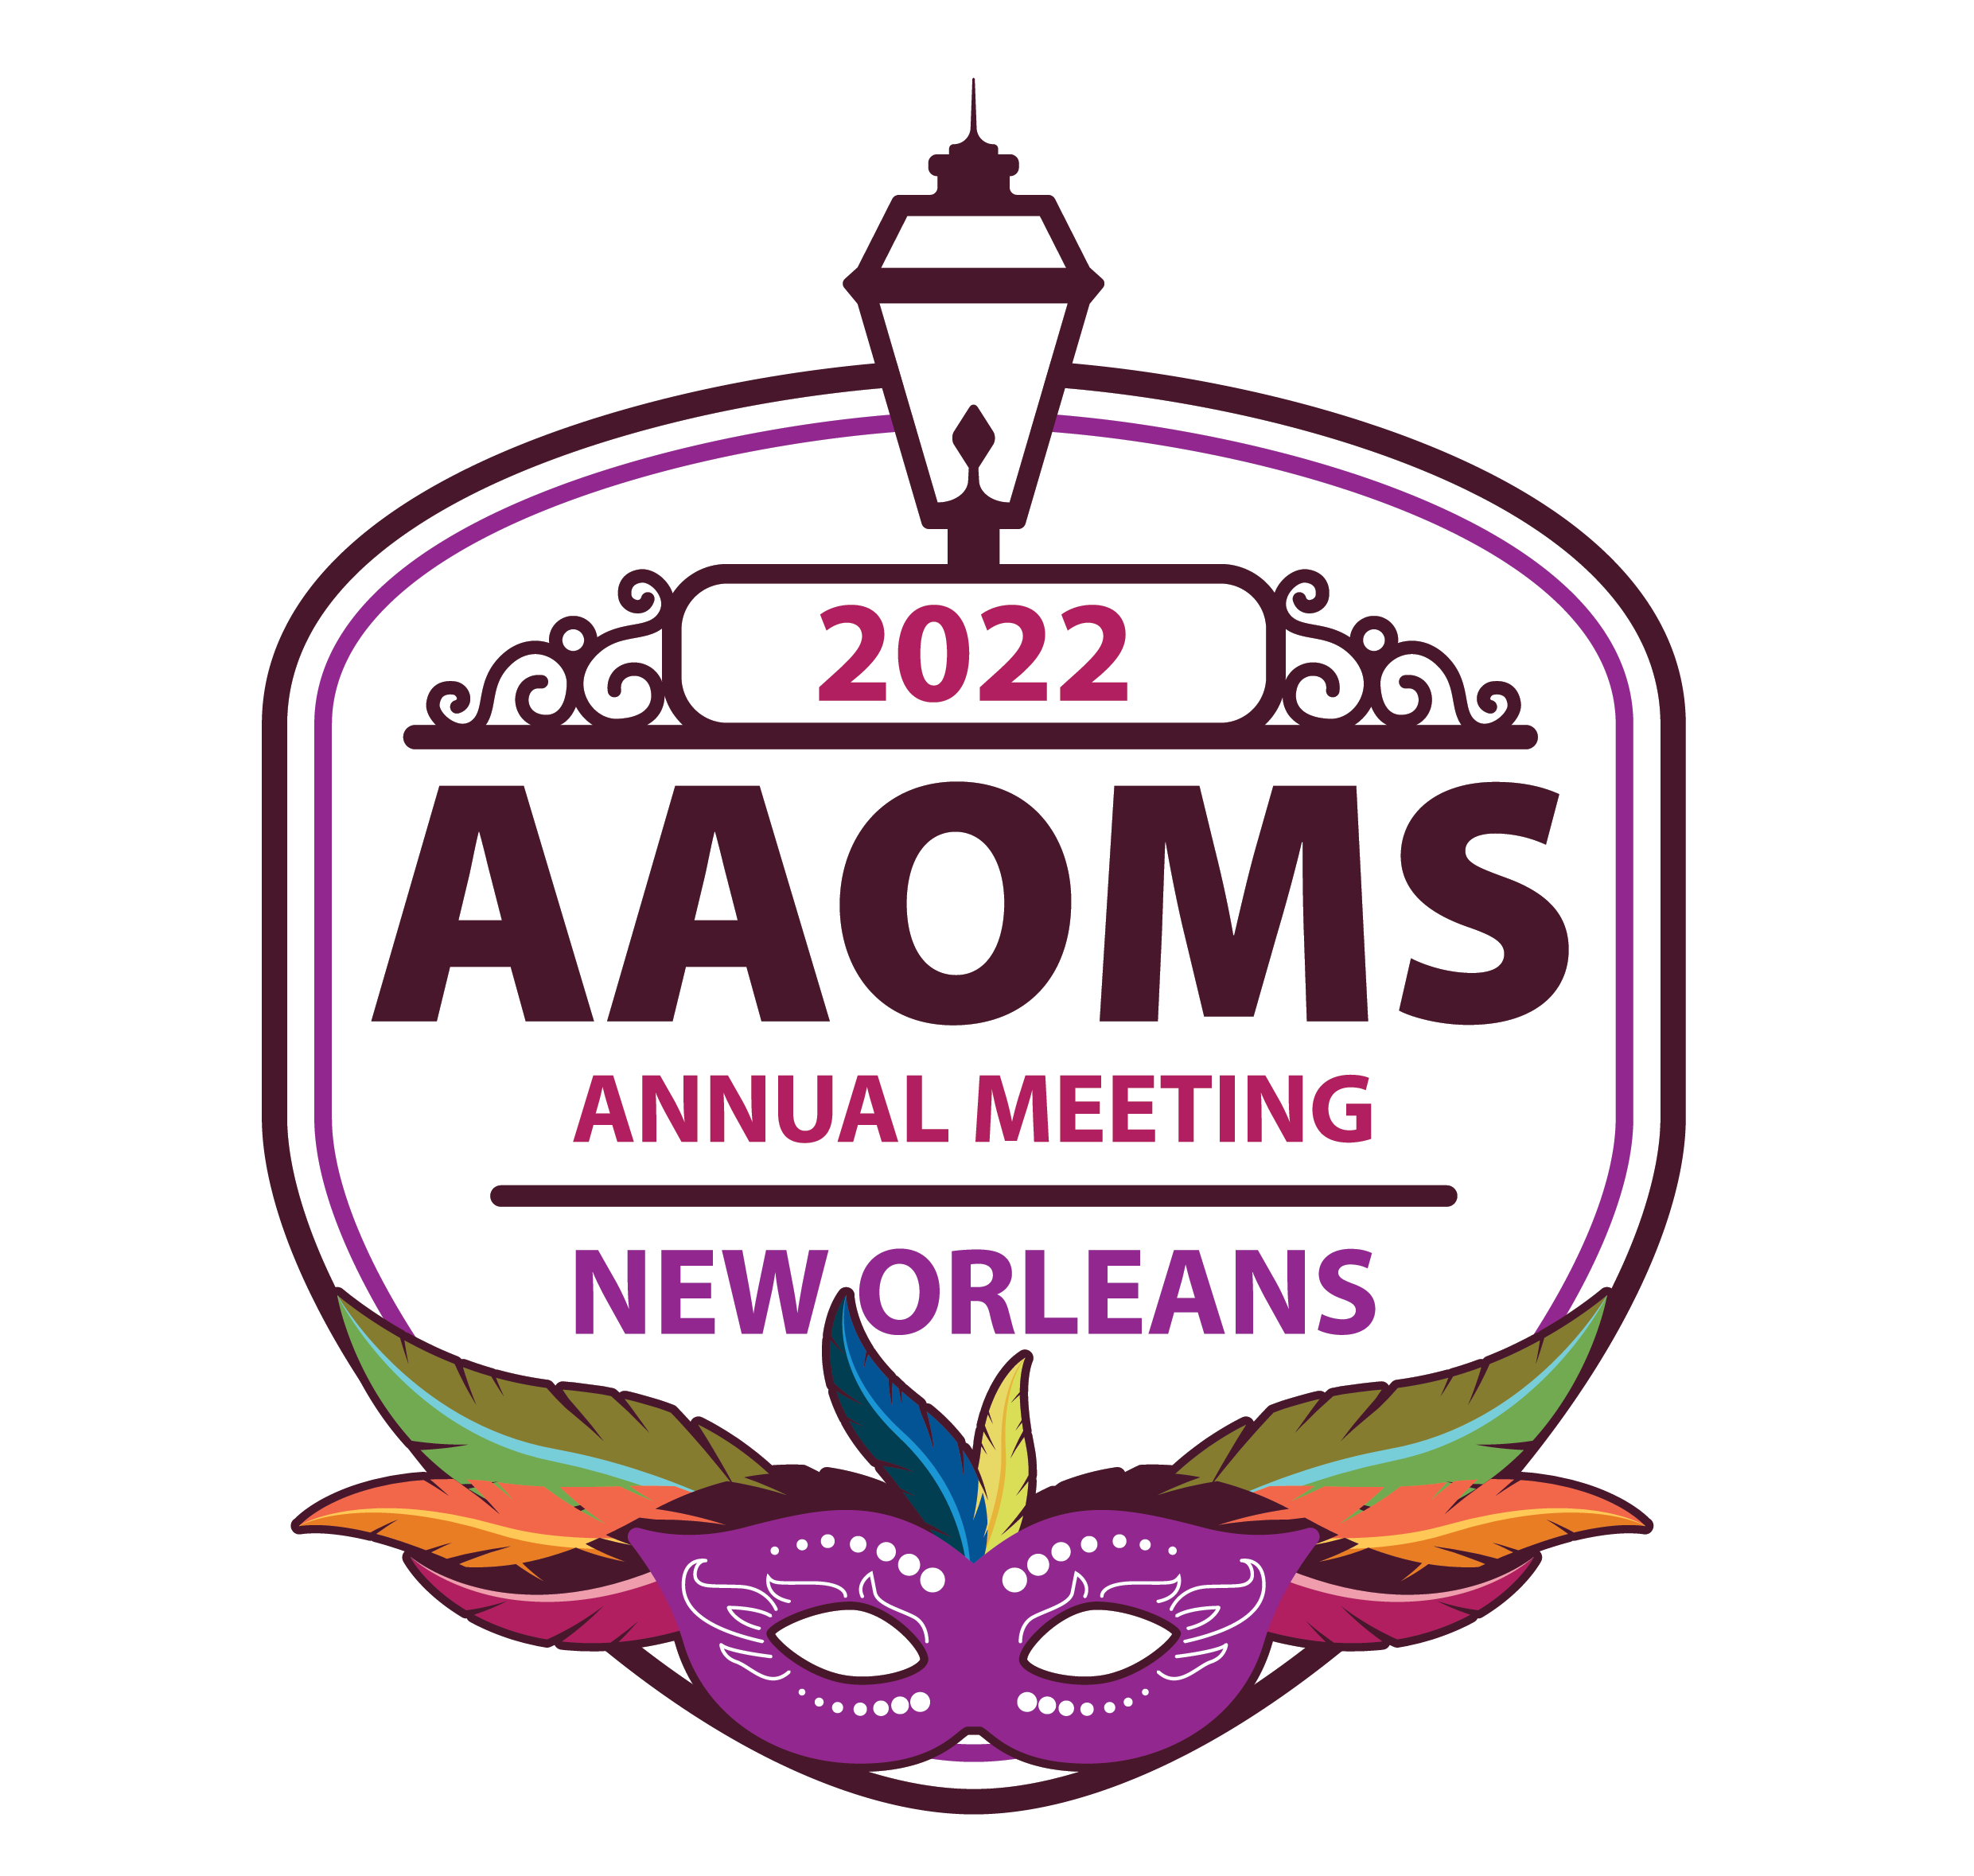 AAOMS Annual Meeting logo